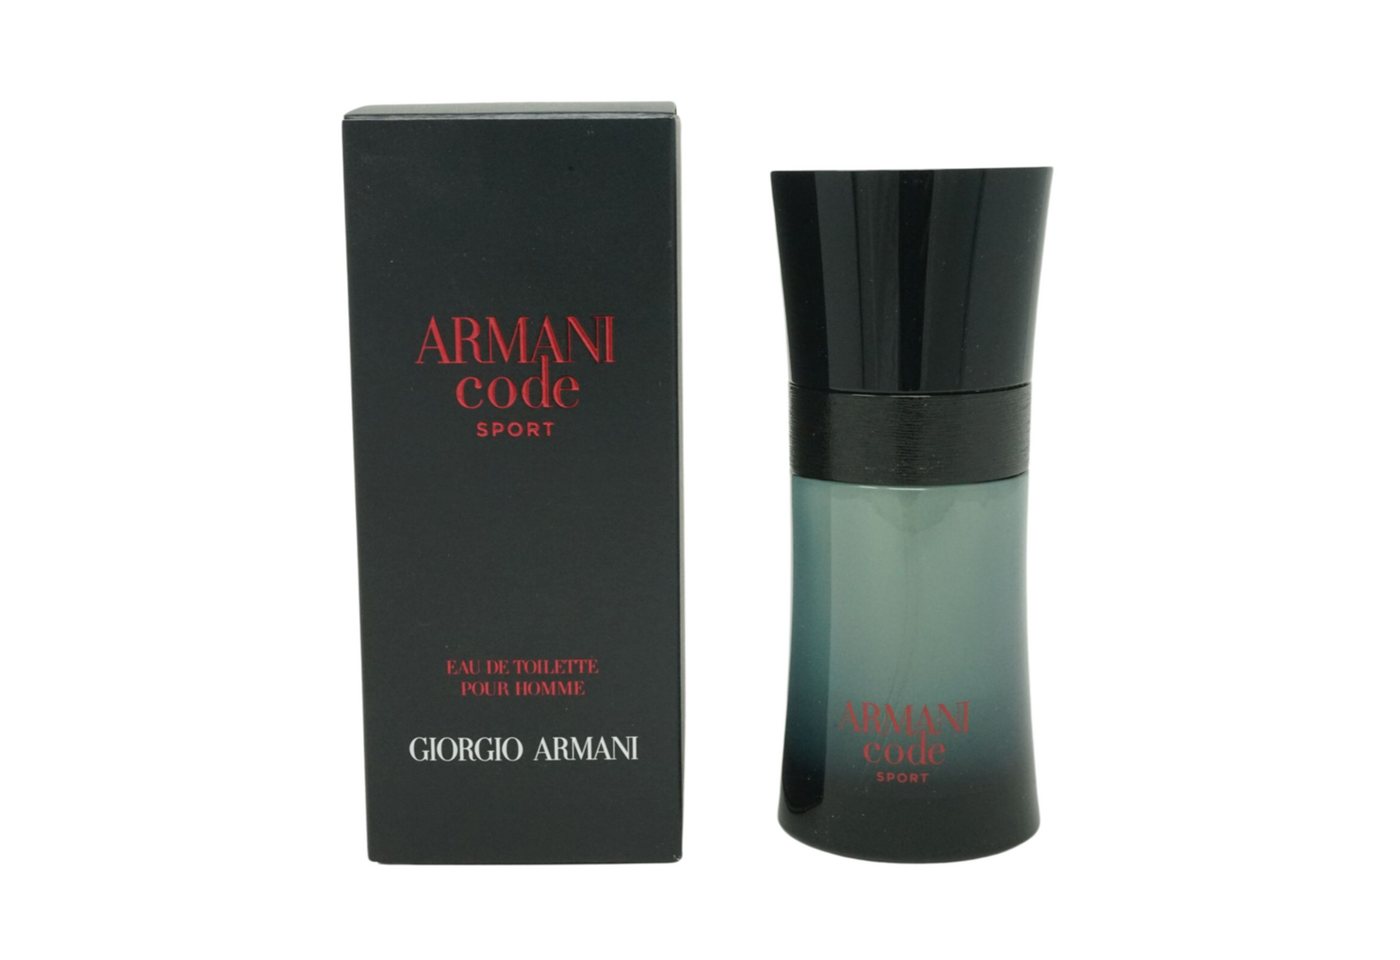 Giorgio Armani Eau de Toilette Giorgio Armani Code Sport Pour Homme Eau de Toilette Spray 50 ml von Giorgio Armani